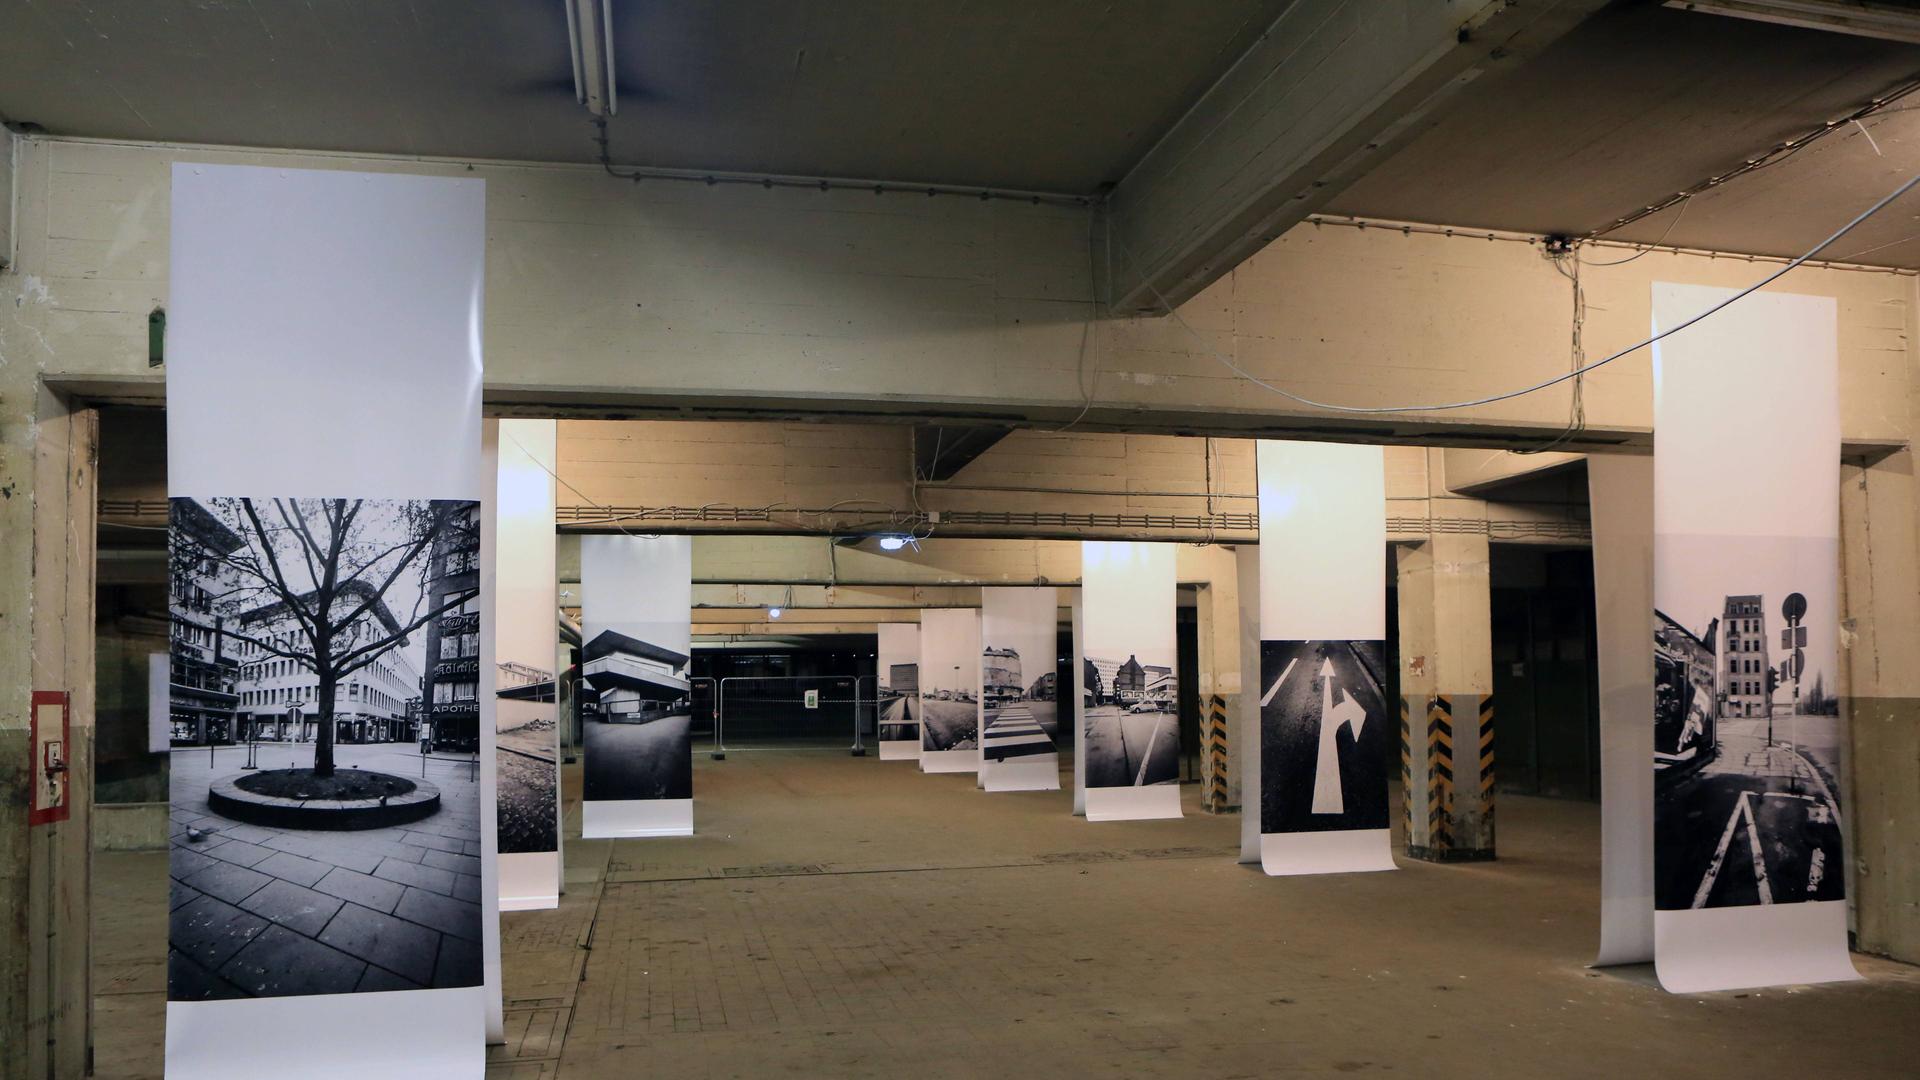 "Köln 5 Uhr 30": Chargesheimer--Fotografien 2014 ausgestellt in der Fabrikhalle Carlswerk , Köln-Mülheim